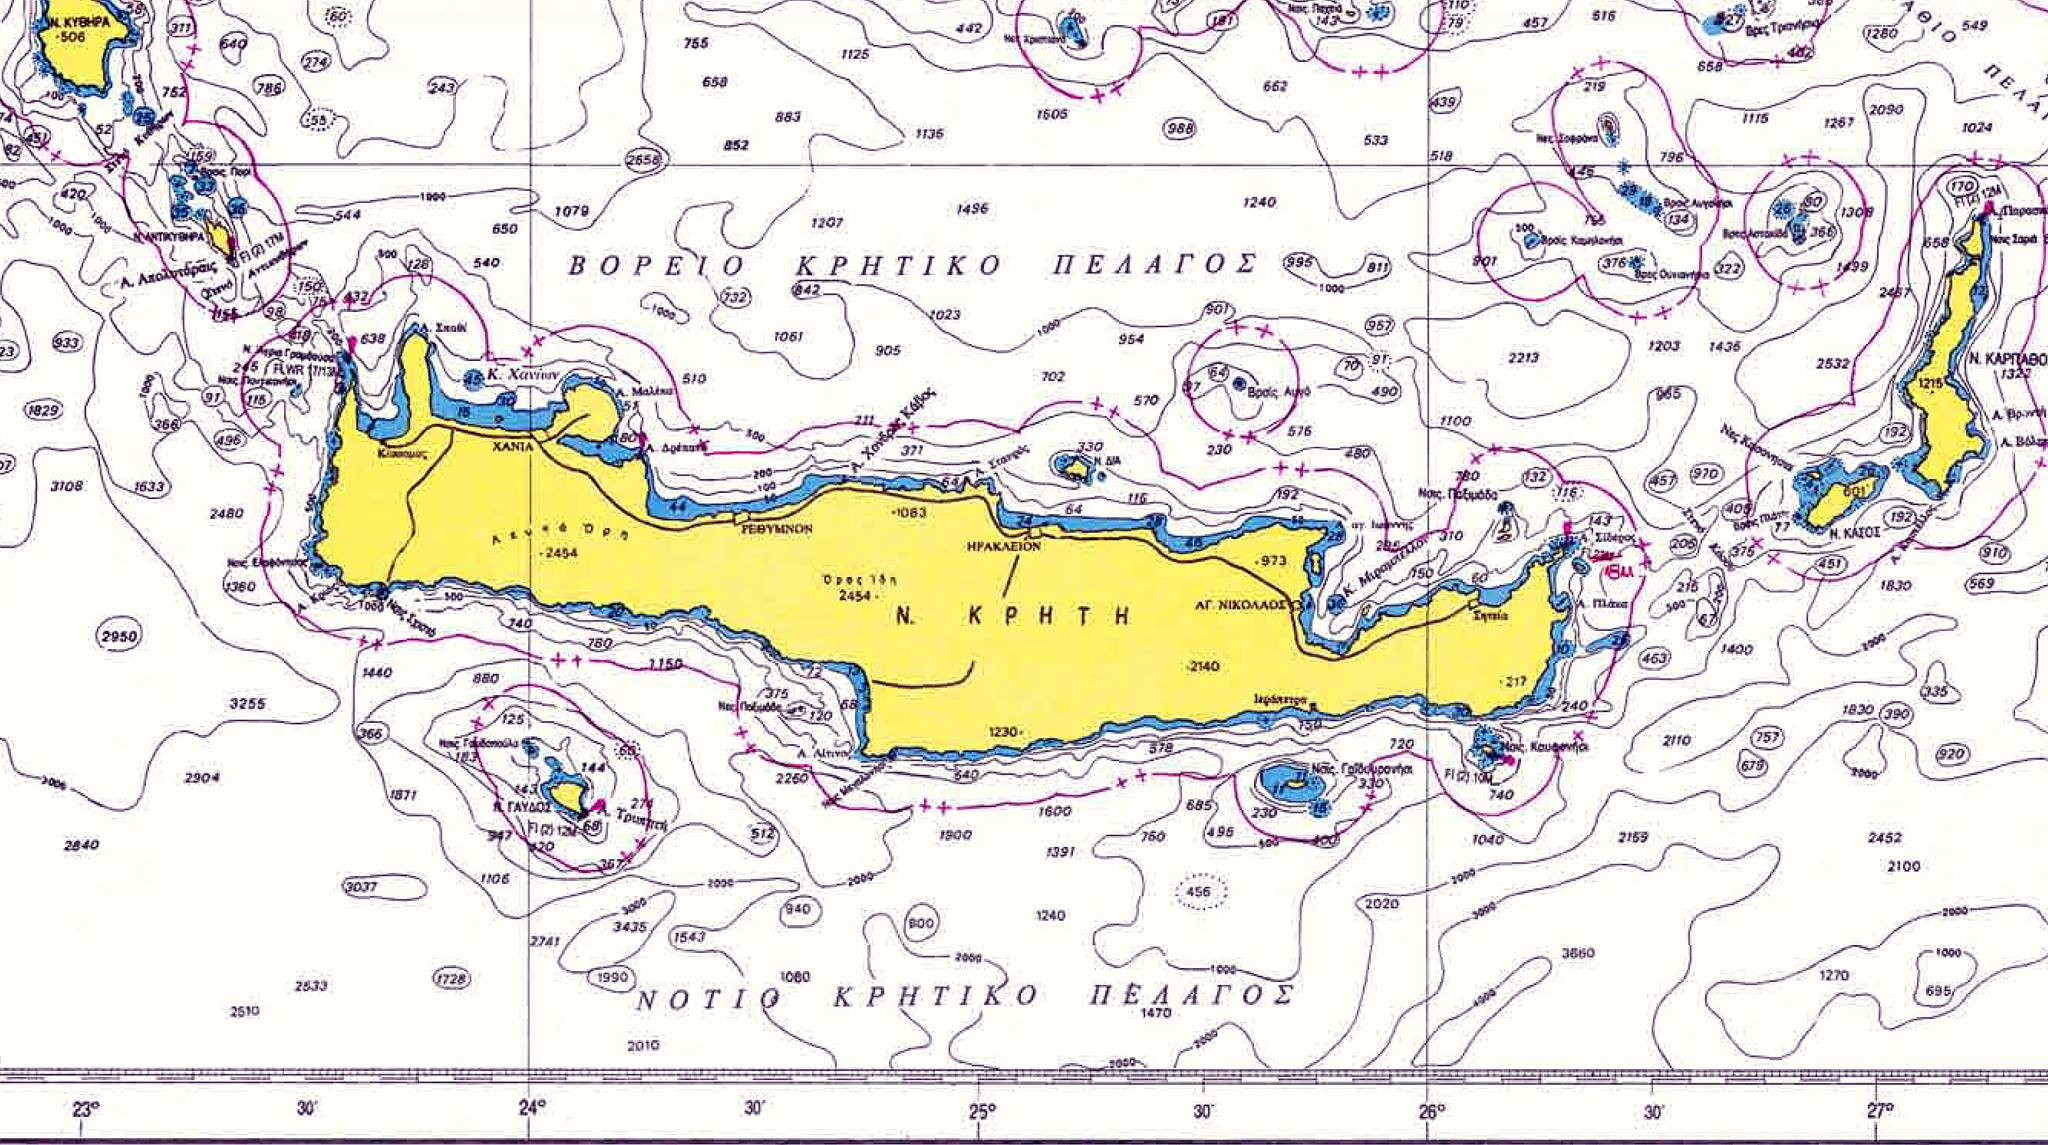 “Να διορθωθούν τα ονόματα θαλάσσιων περιοχών γύρω από την Κρήτη” – Επιστολή σε Μητσοτάκη